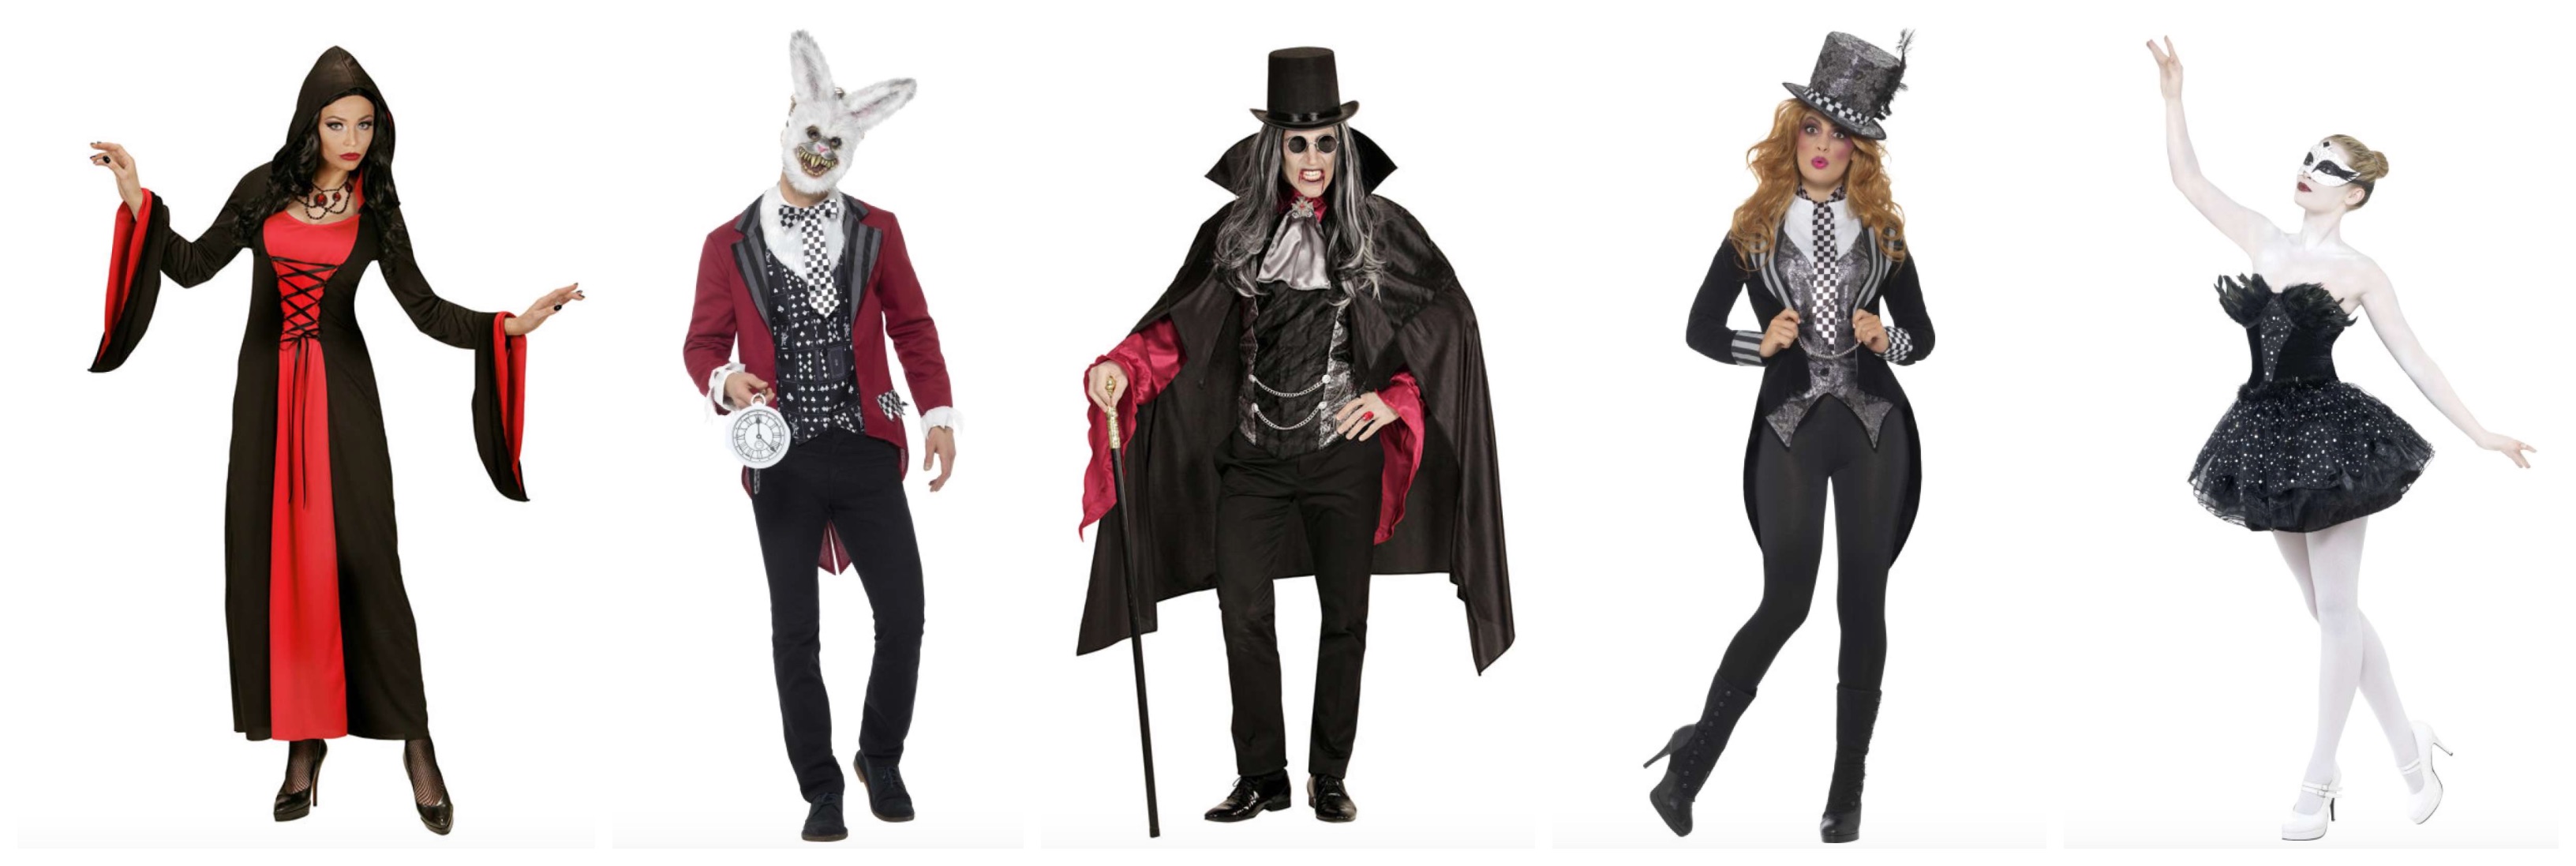 gotisk kostume til voksne - Gotisk kostume til voksne